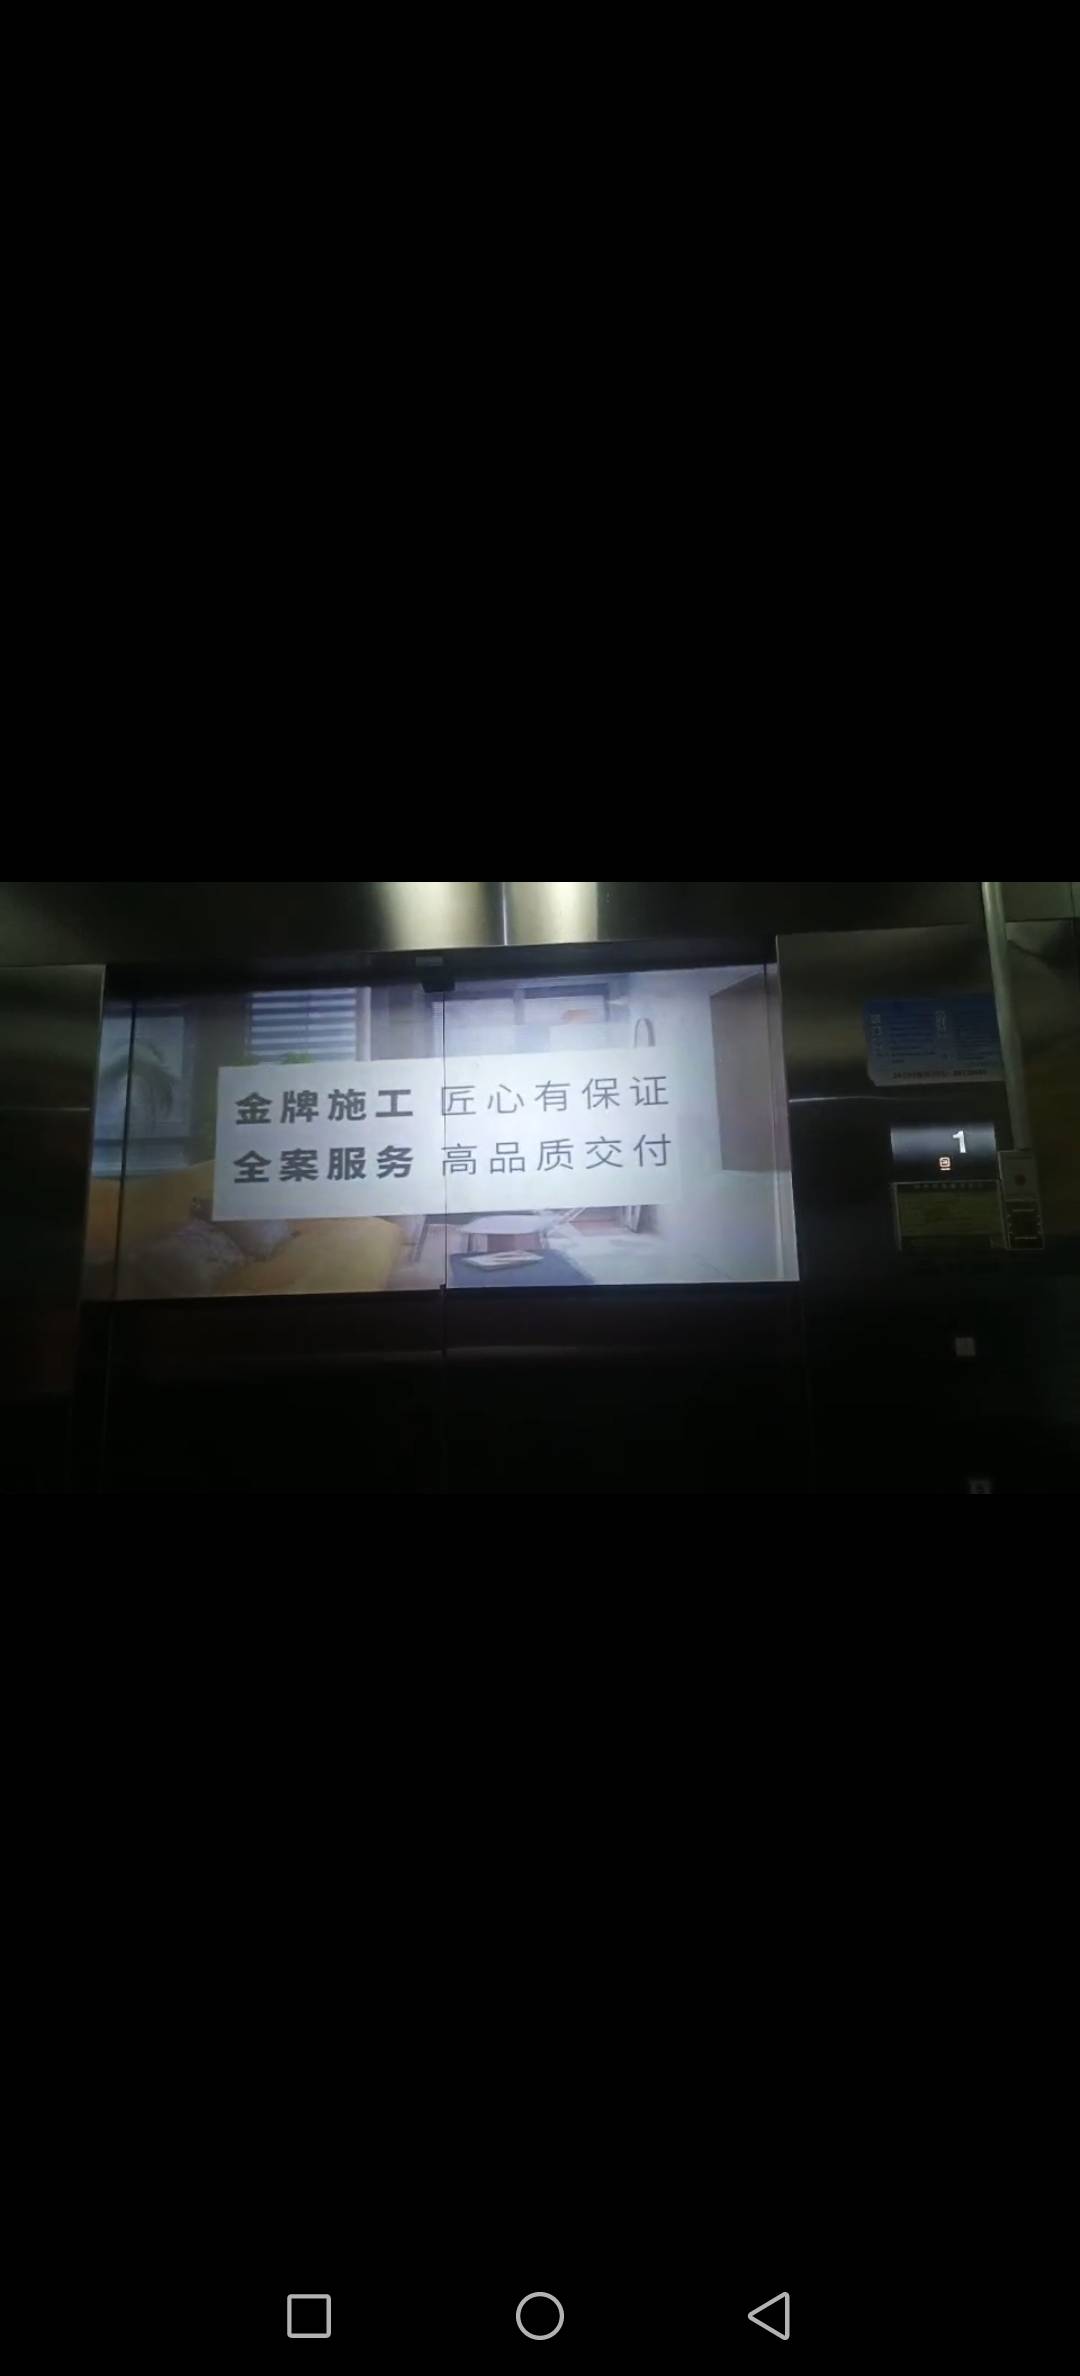 江苏常州天宁吾悦广场商超卖场电梯投影